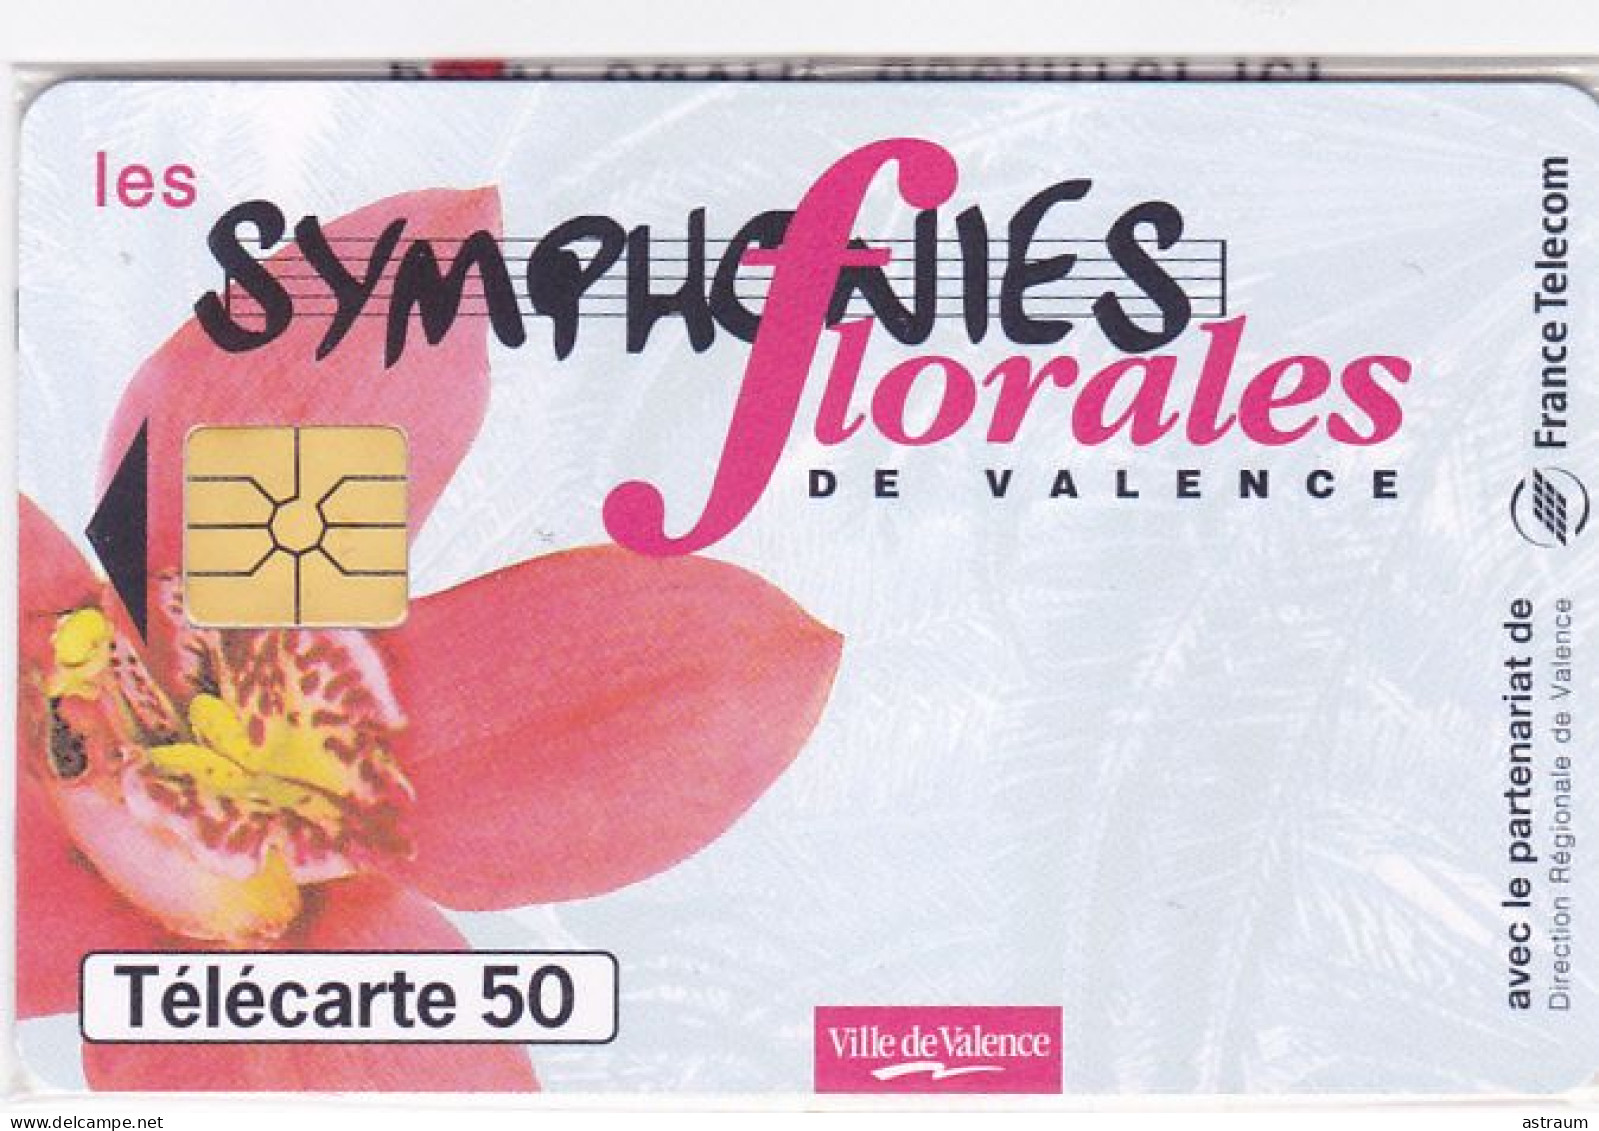 Telecarte Privée / Publique En1634 NSB - Symphonies Florales De Valence - 50 U - Gem - 1997 - 50 Einheiten